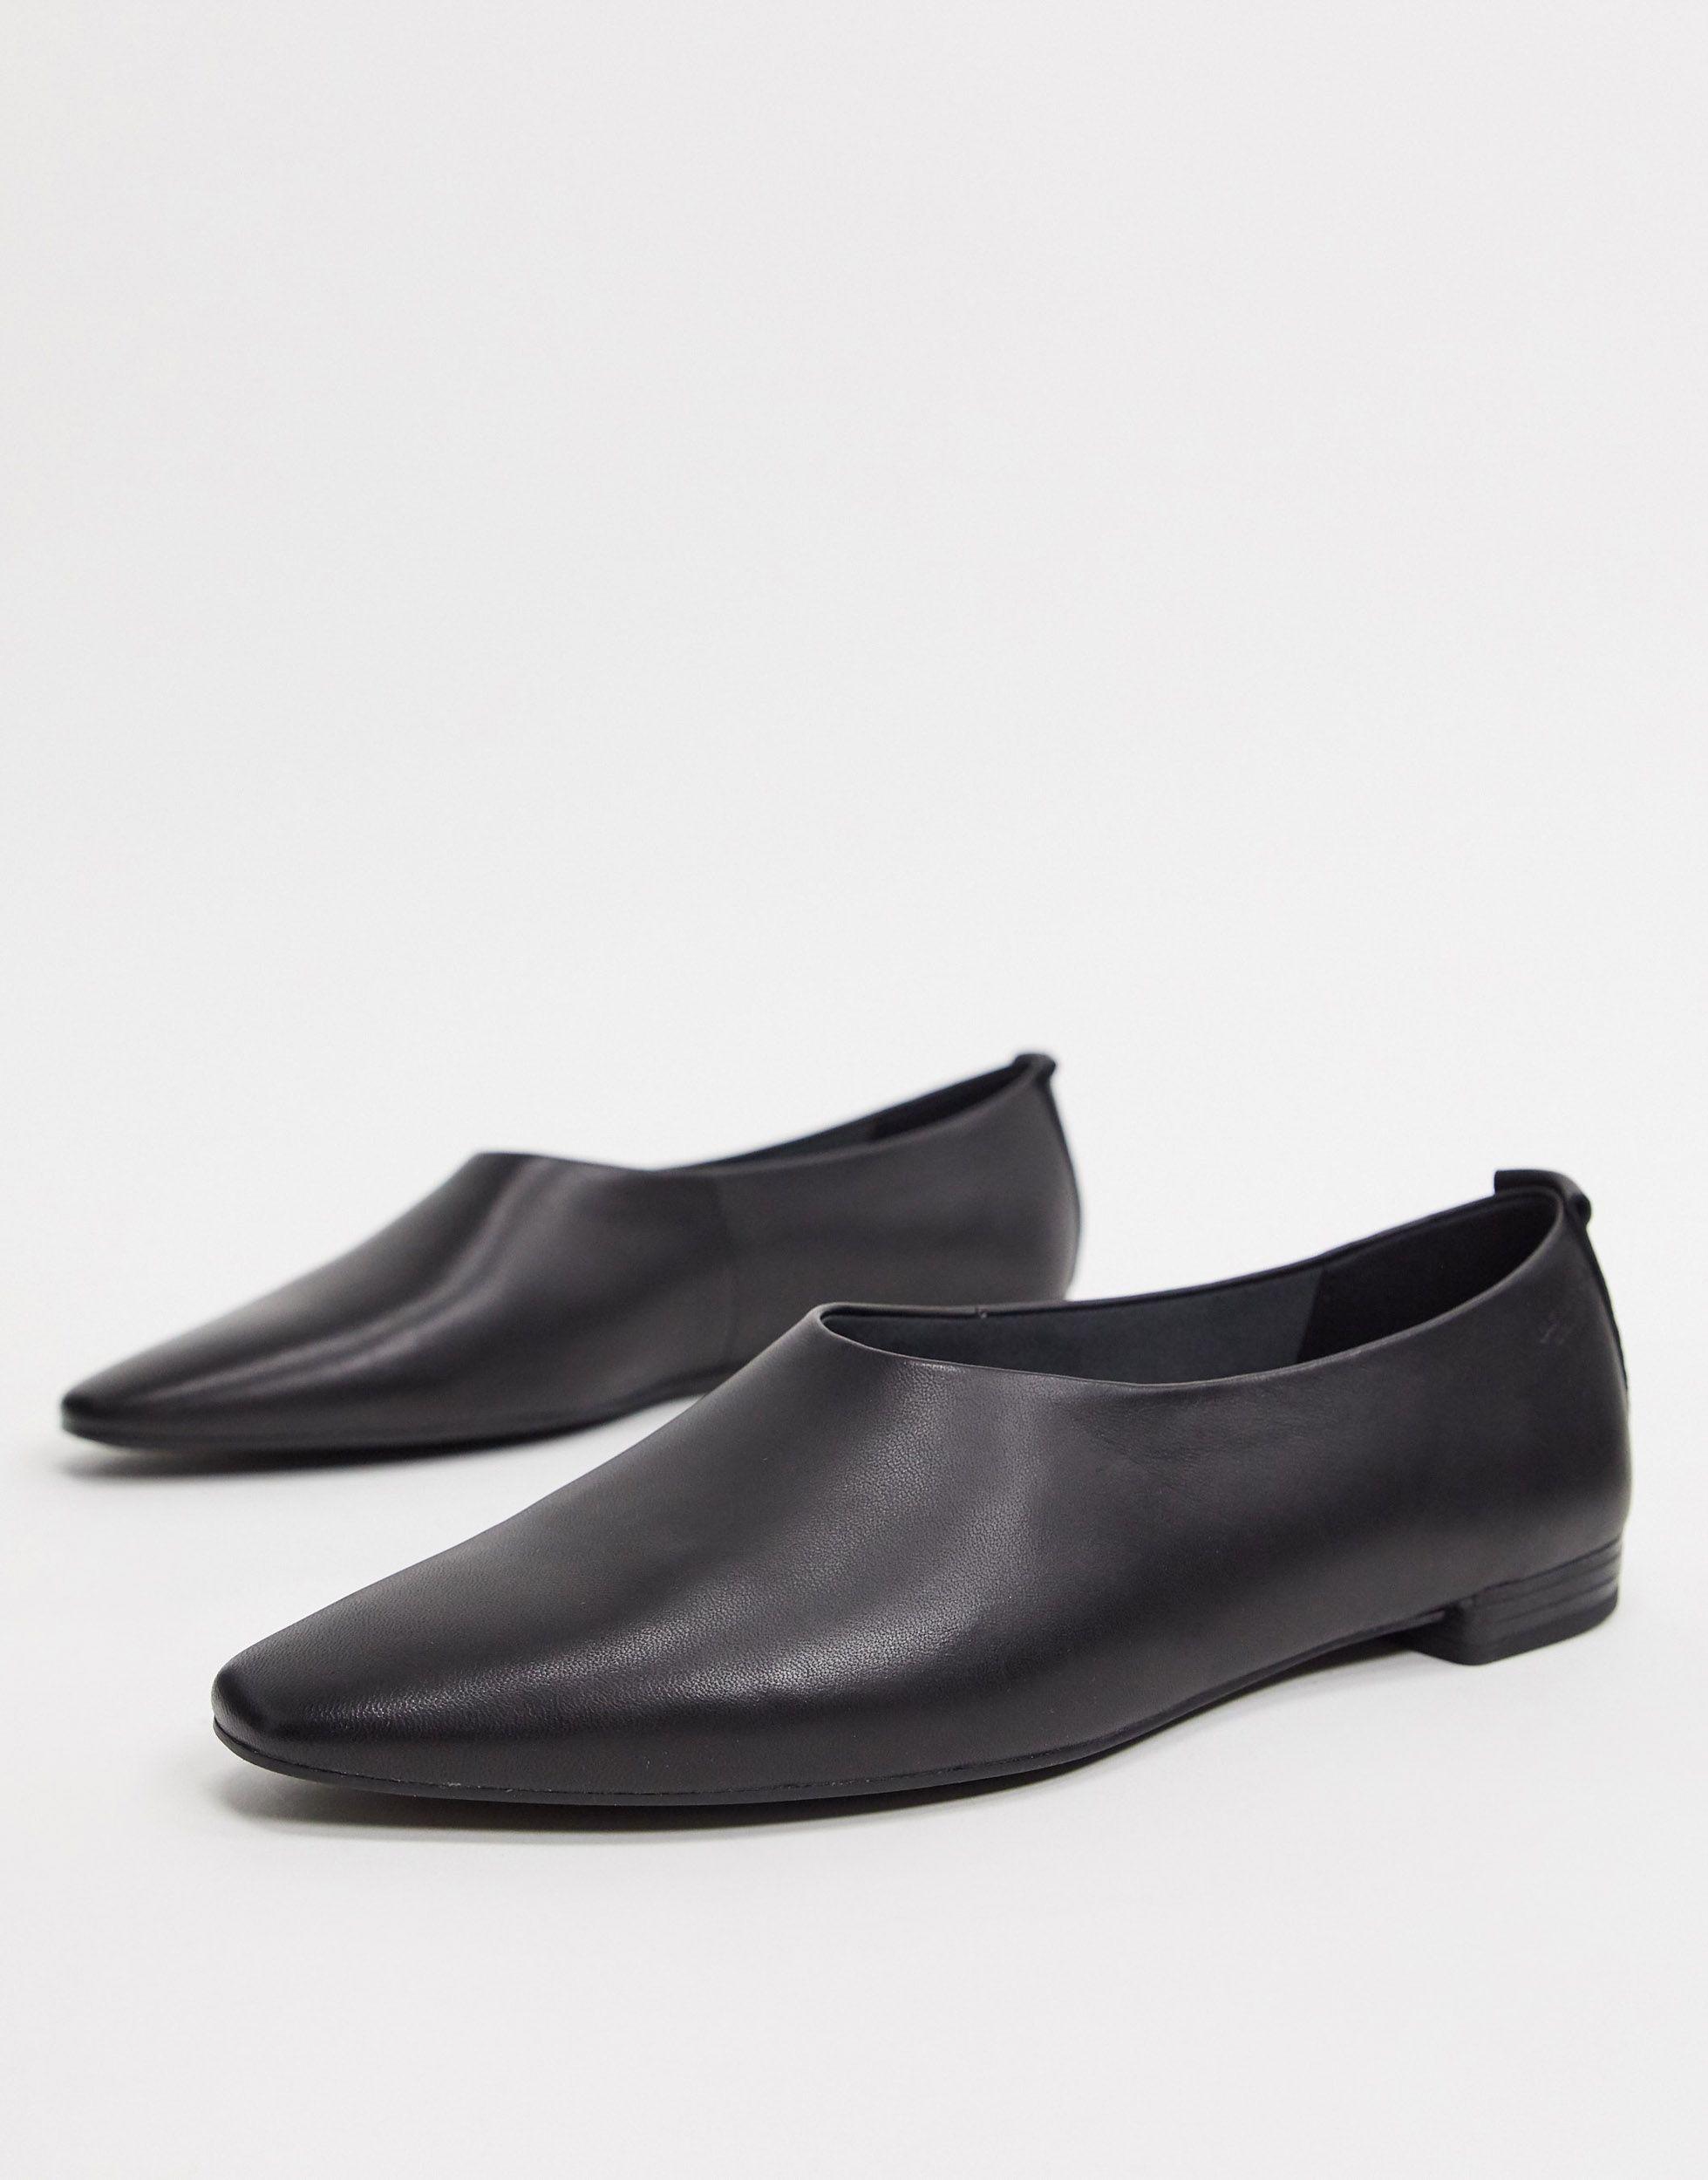 Gom Verwachten Vleien Vagabond Shoemakers Celia Soft Leather Ballet Flats in Black | Lyst